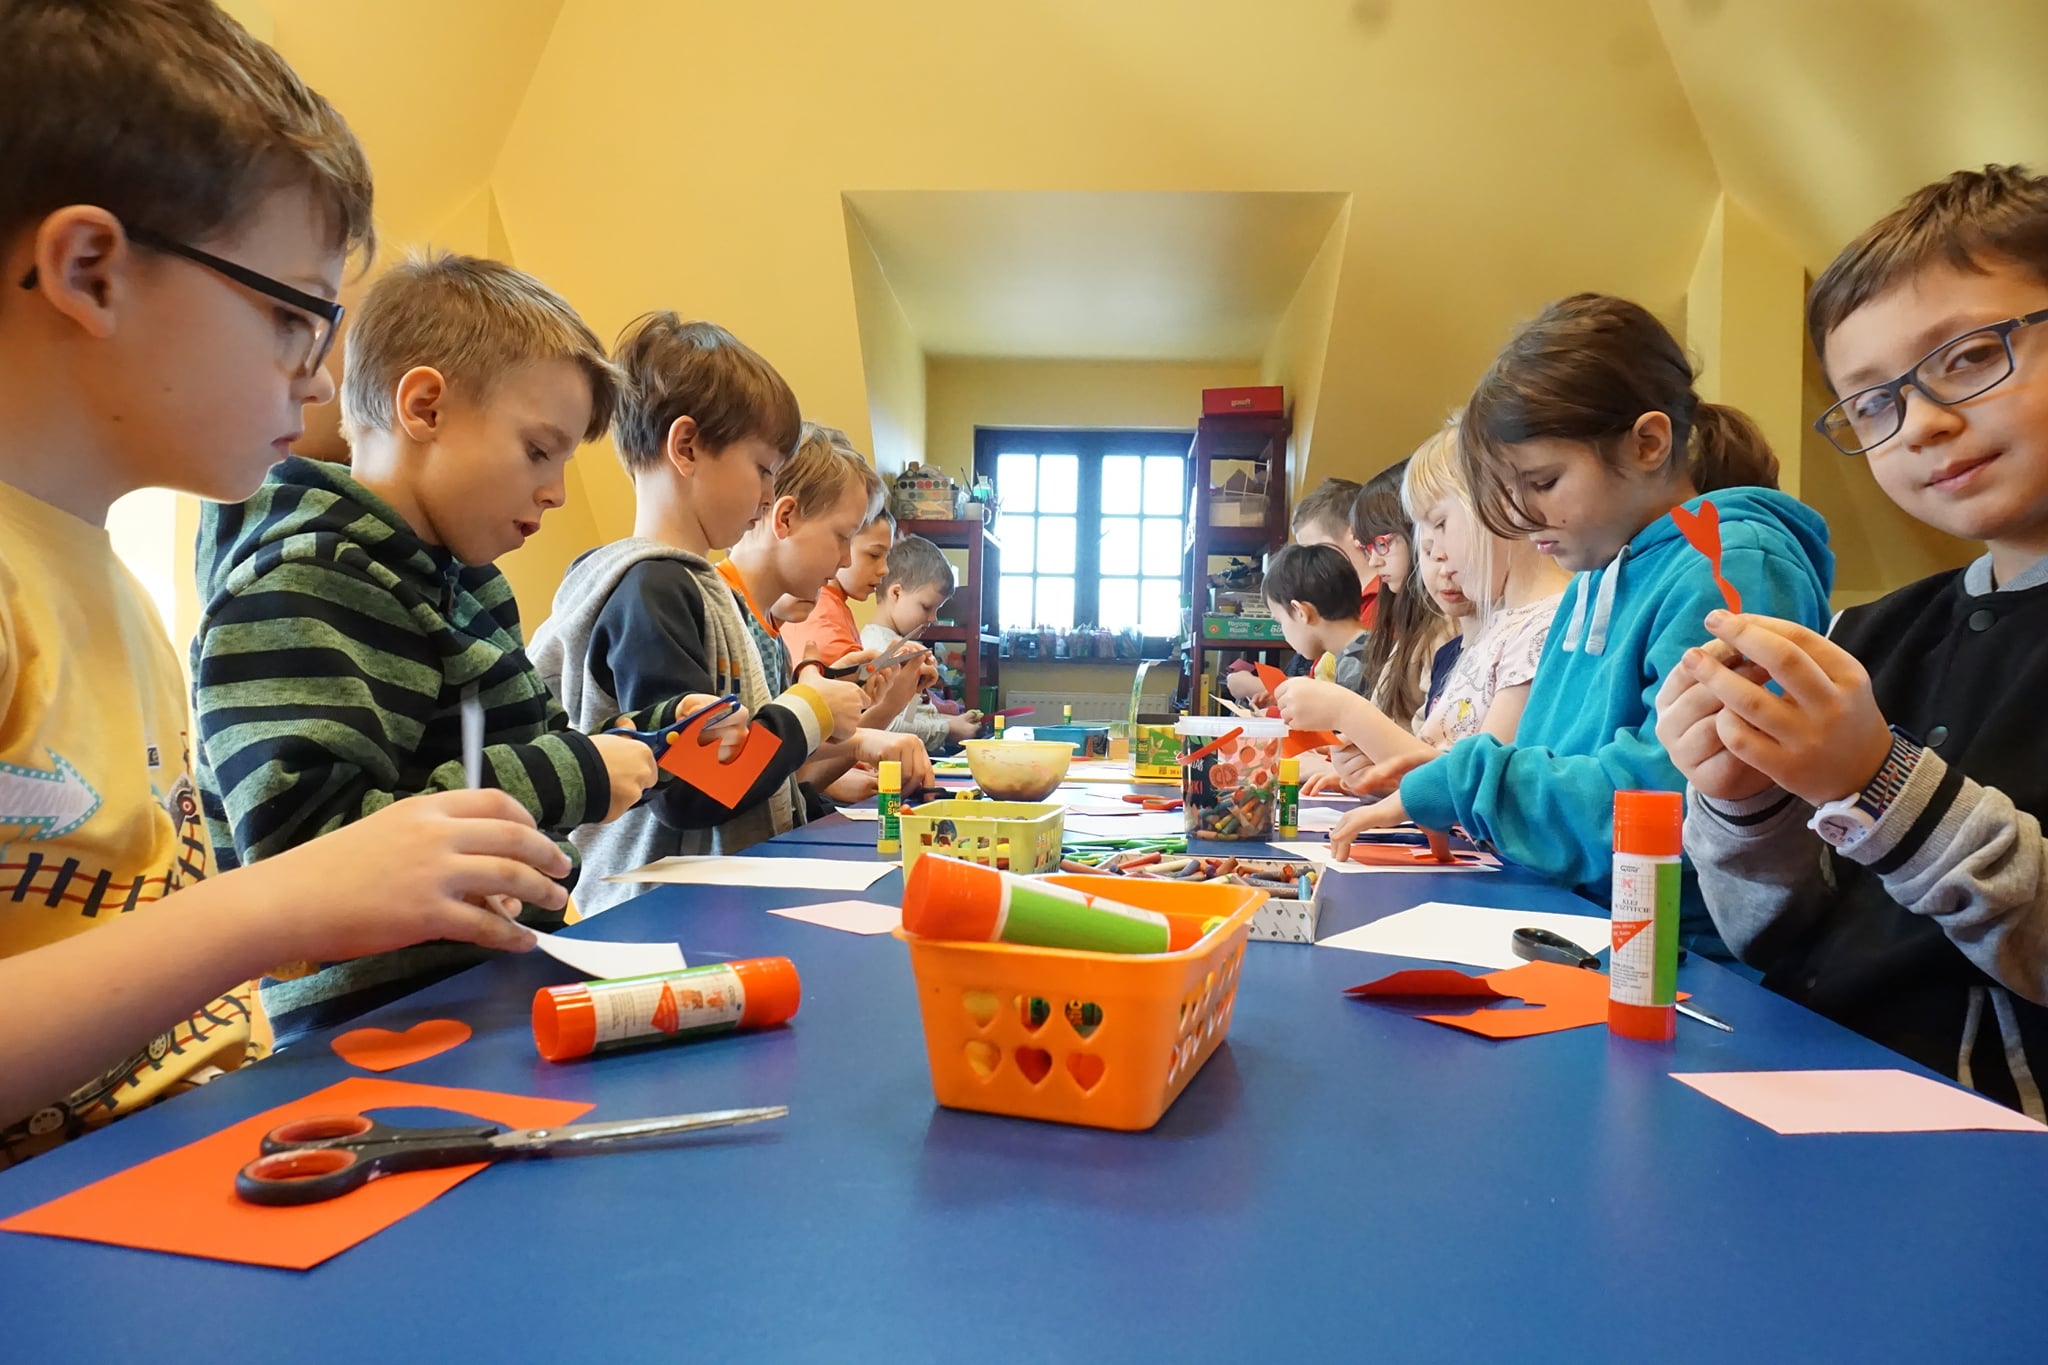 Grupa dzieci, chłopcy i dziewczynki siedzący przy stole, wycinający serduszka na kartki walentynkowe